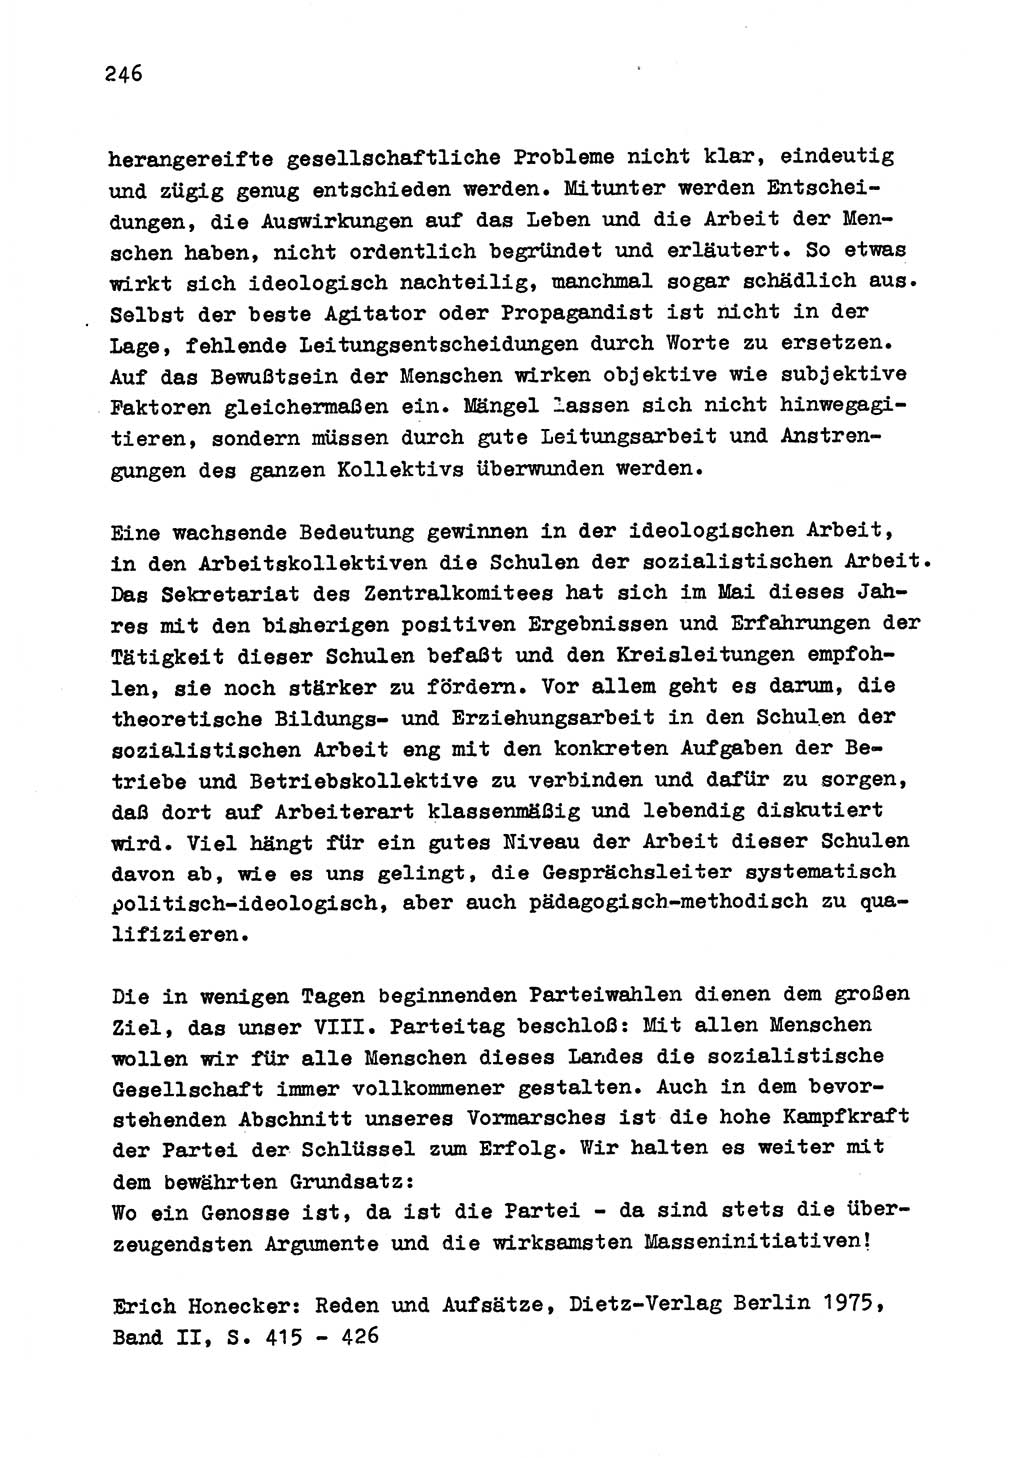 Zu Fragen der Parteiarbeit [Sozialistische Einheitspartei Deutschlands (SED) Deutsche Demokratische Republik (DDR)] 1979, Seite 246 (Fr. PA SED DDR 1979, S. 246)